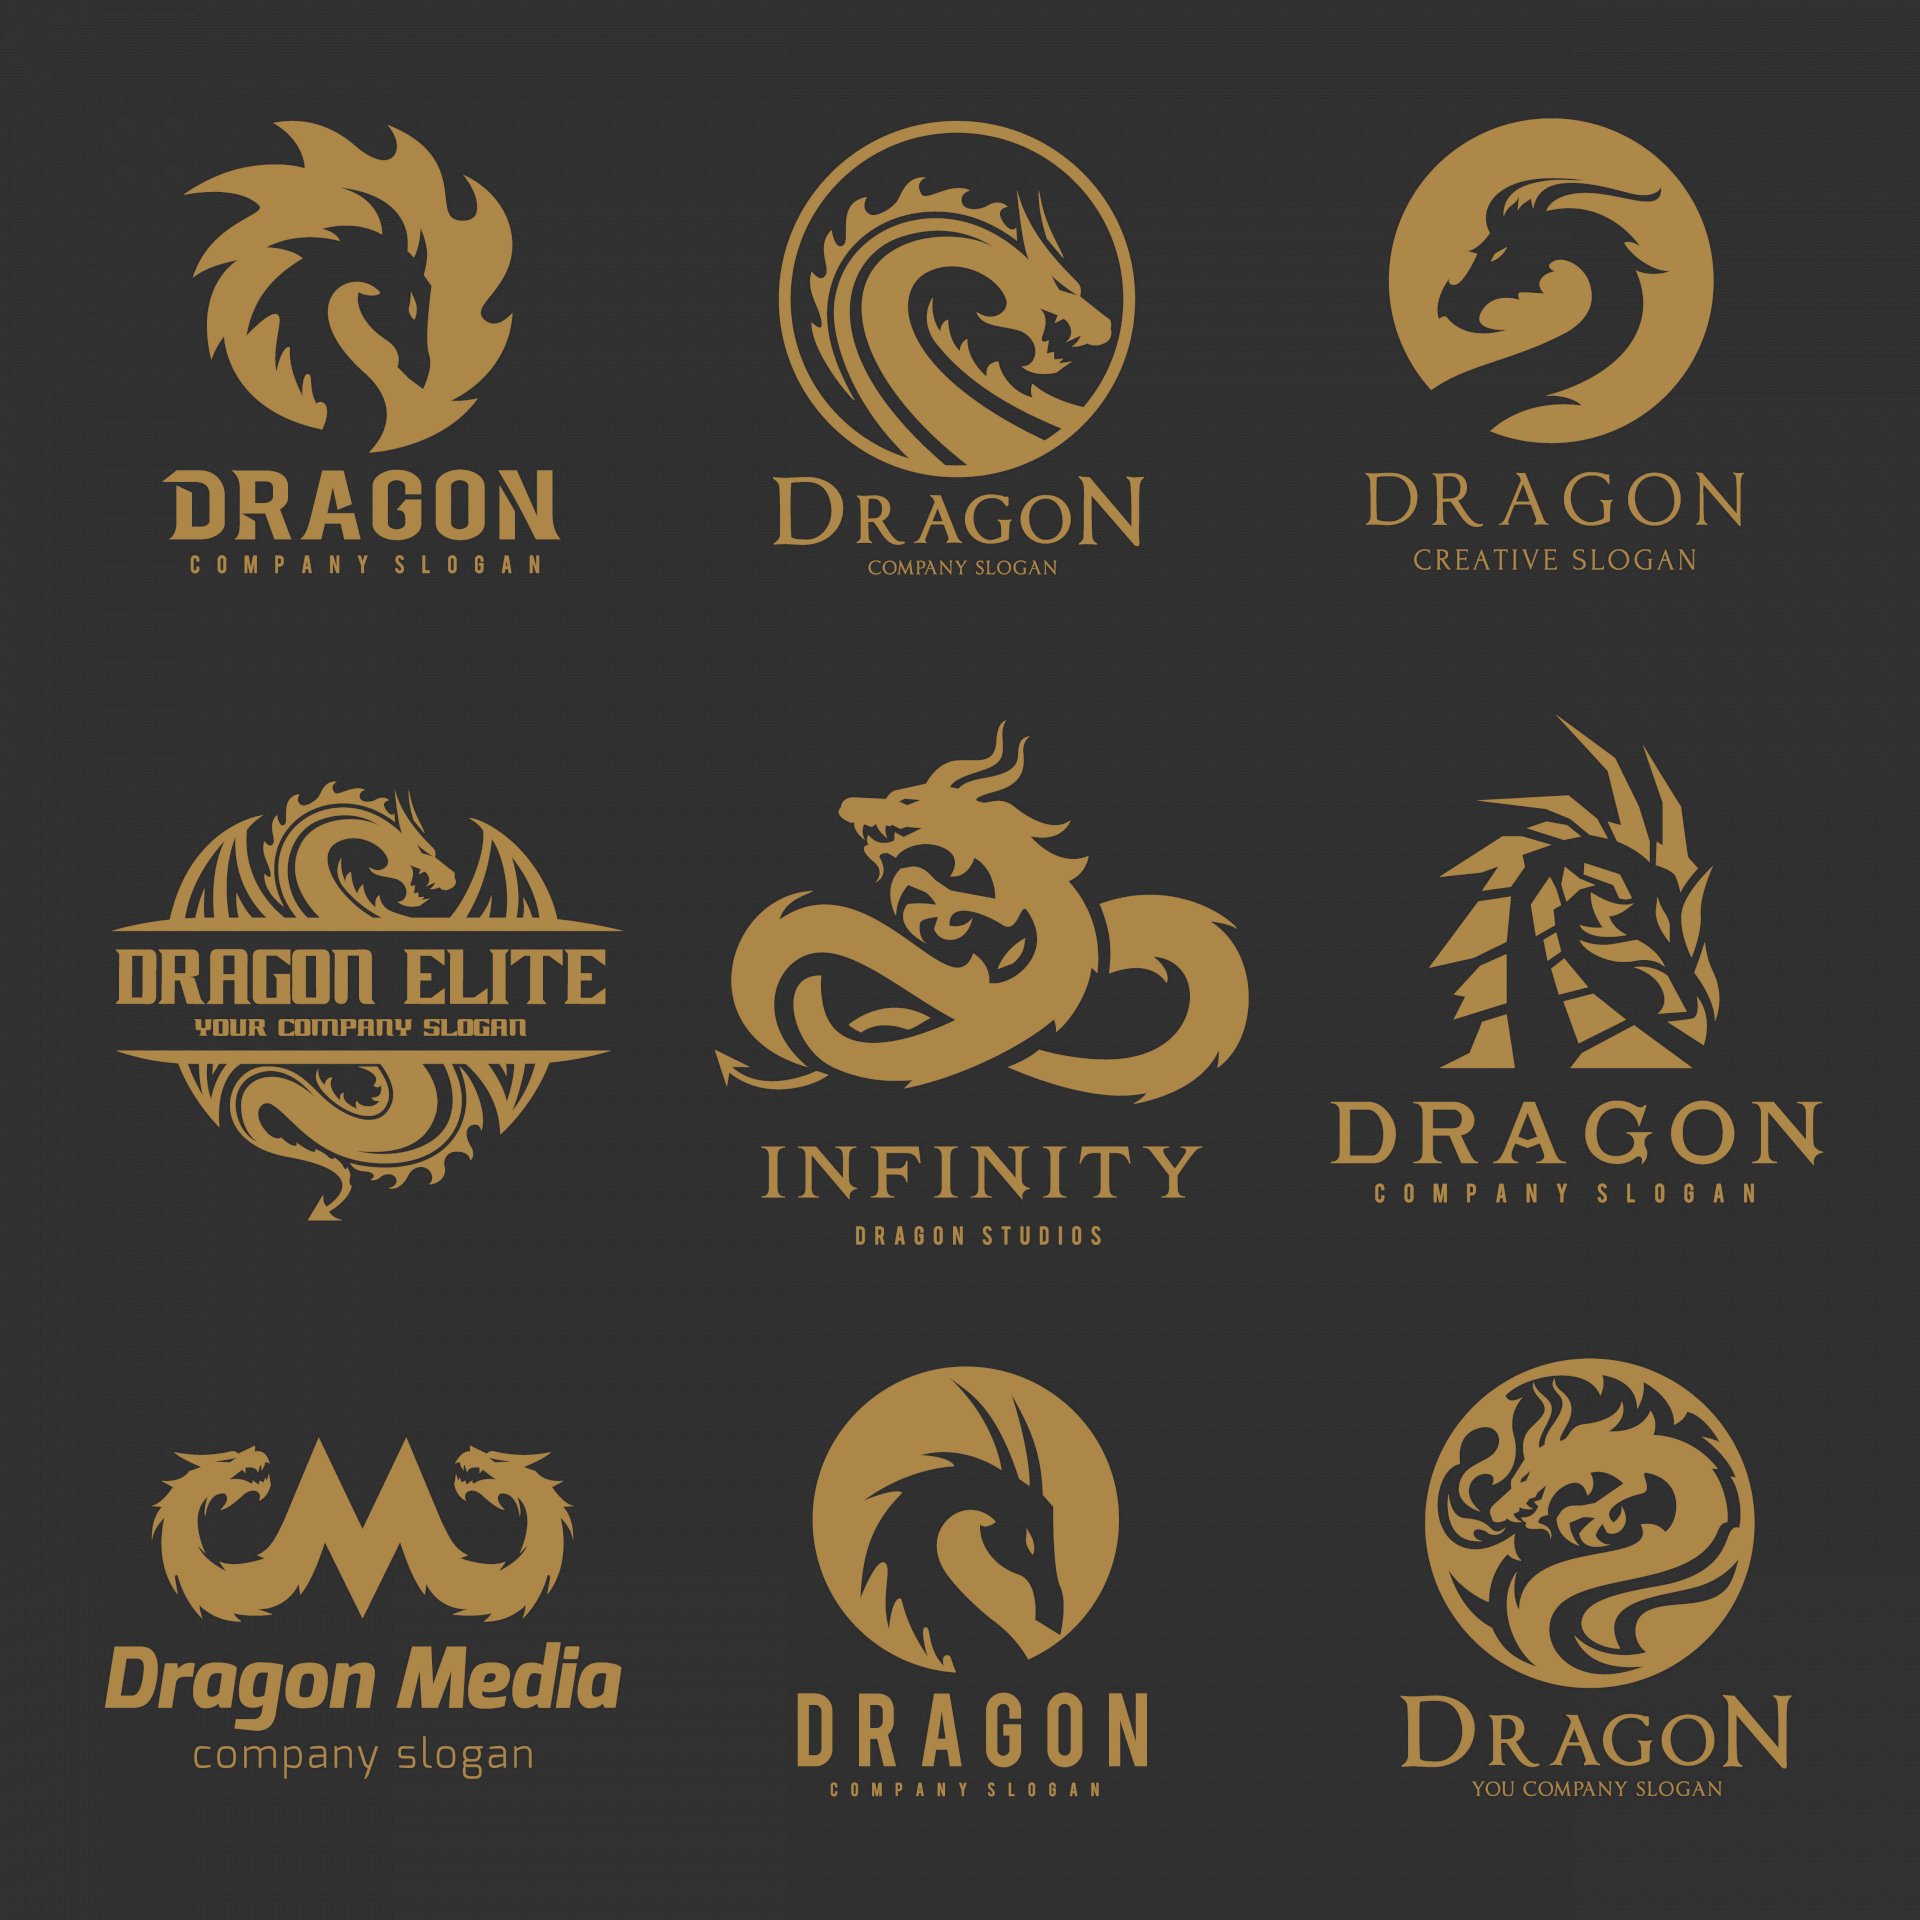 Tổng hợp hình ảnh logo rồng đẹp với nhiều mẫu thiết kế khác nhau